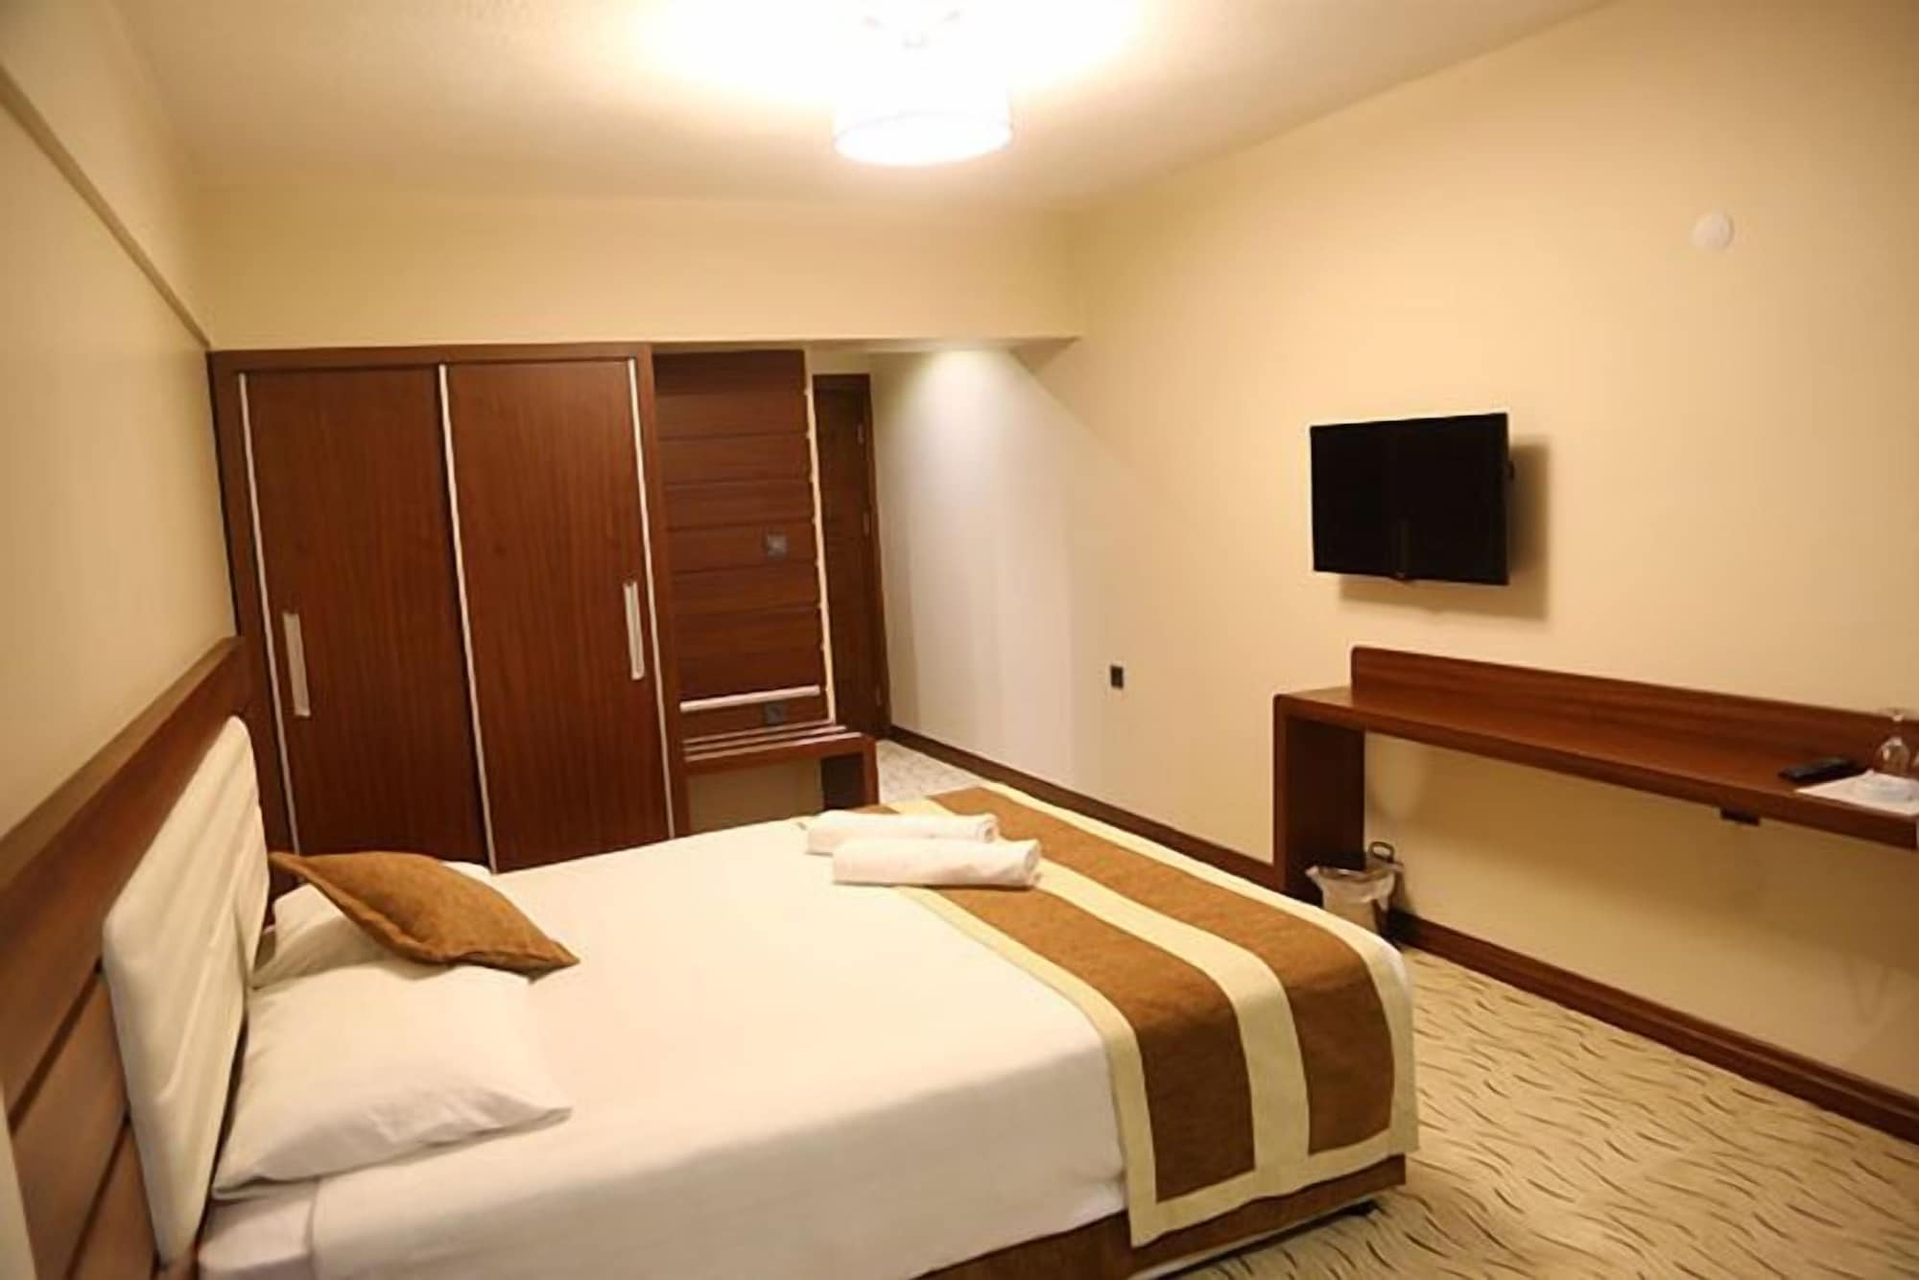 Bedroom 3, Camlicesme Hotel, Merkez